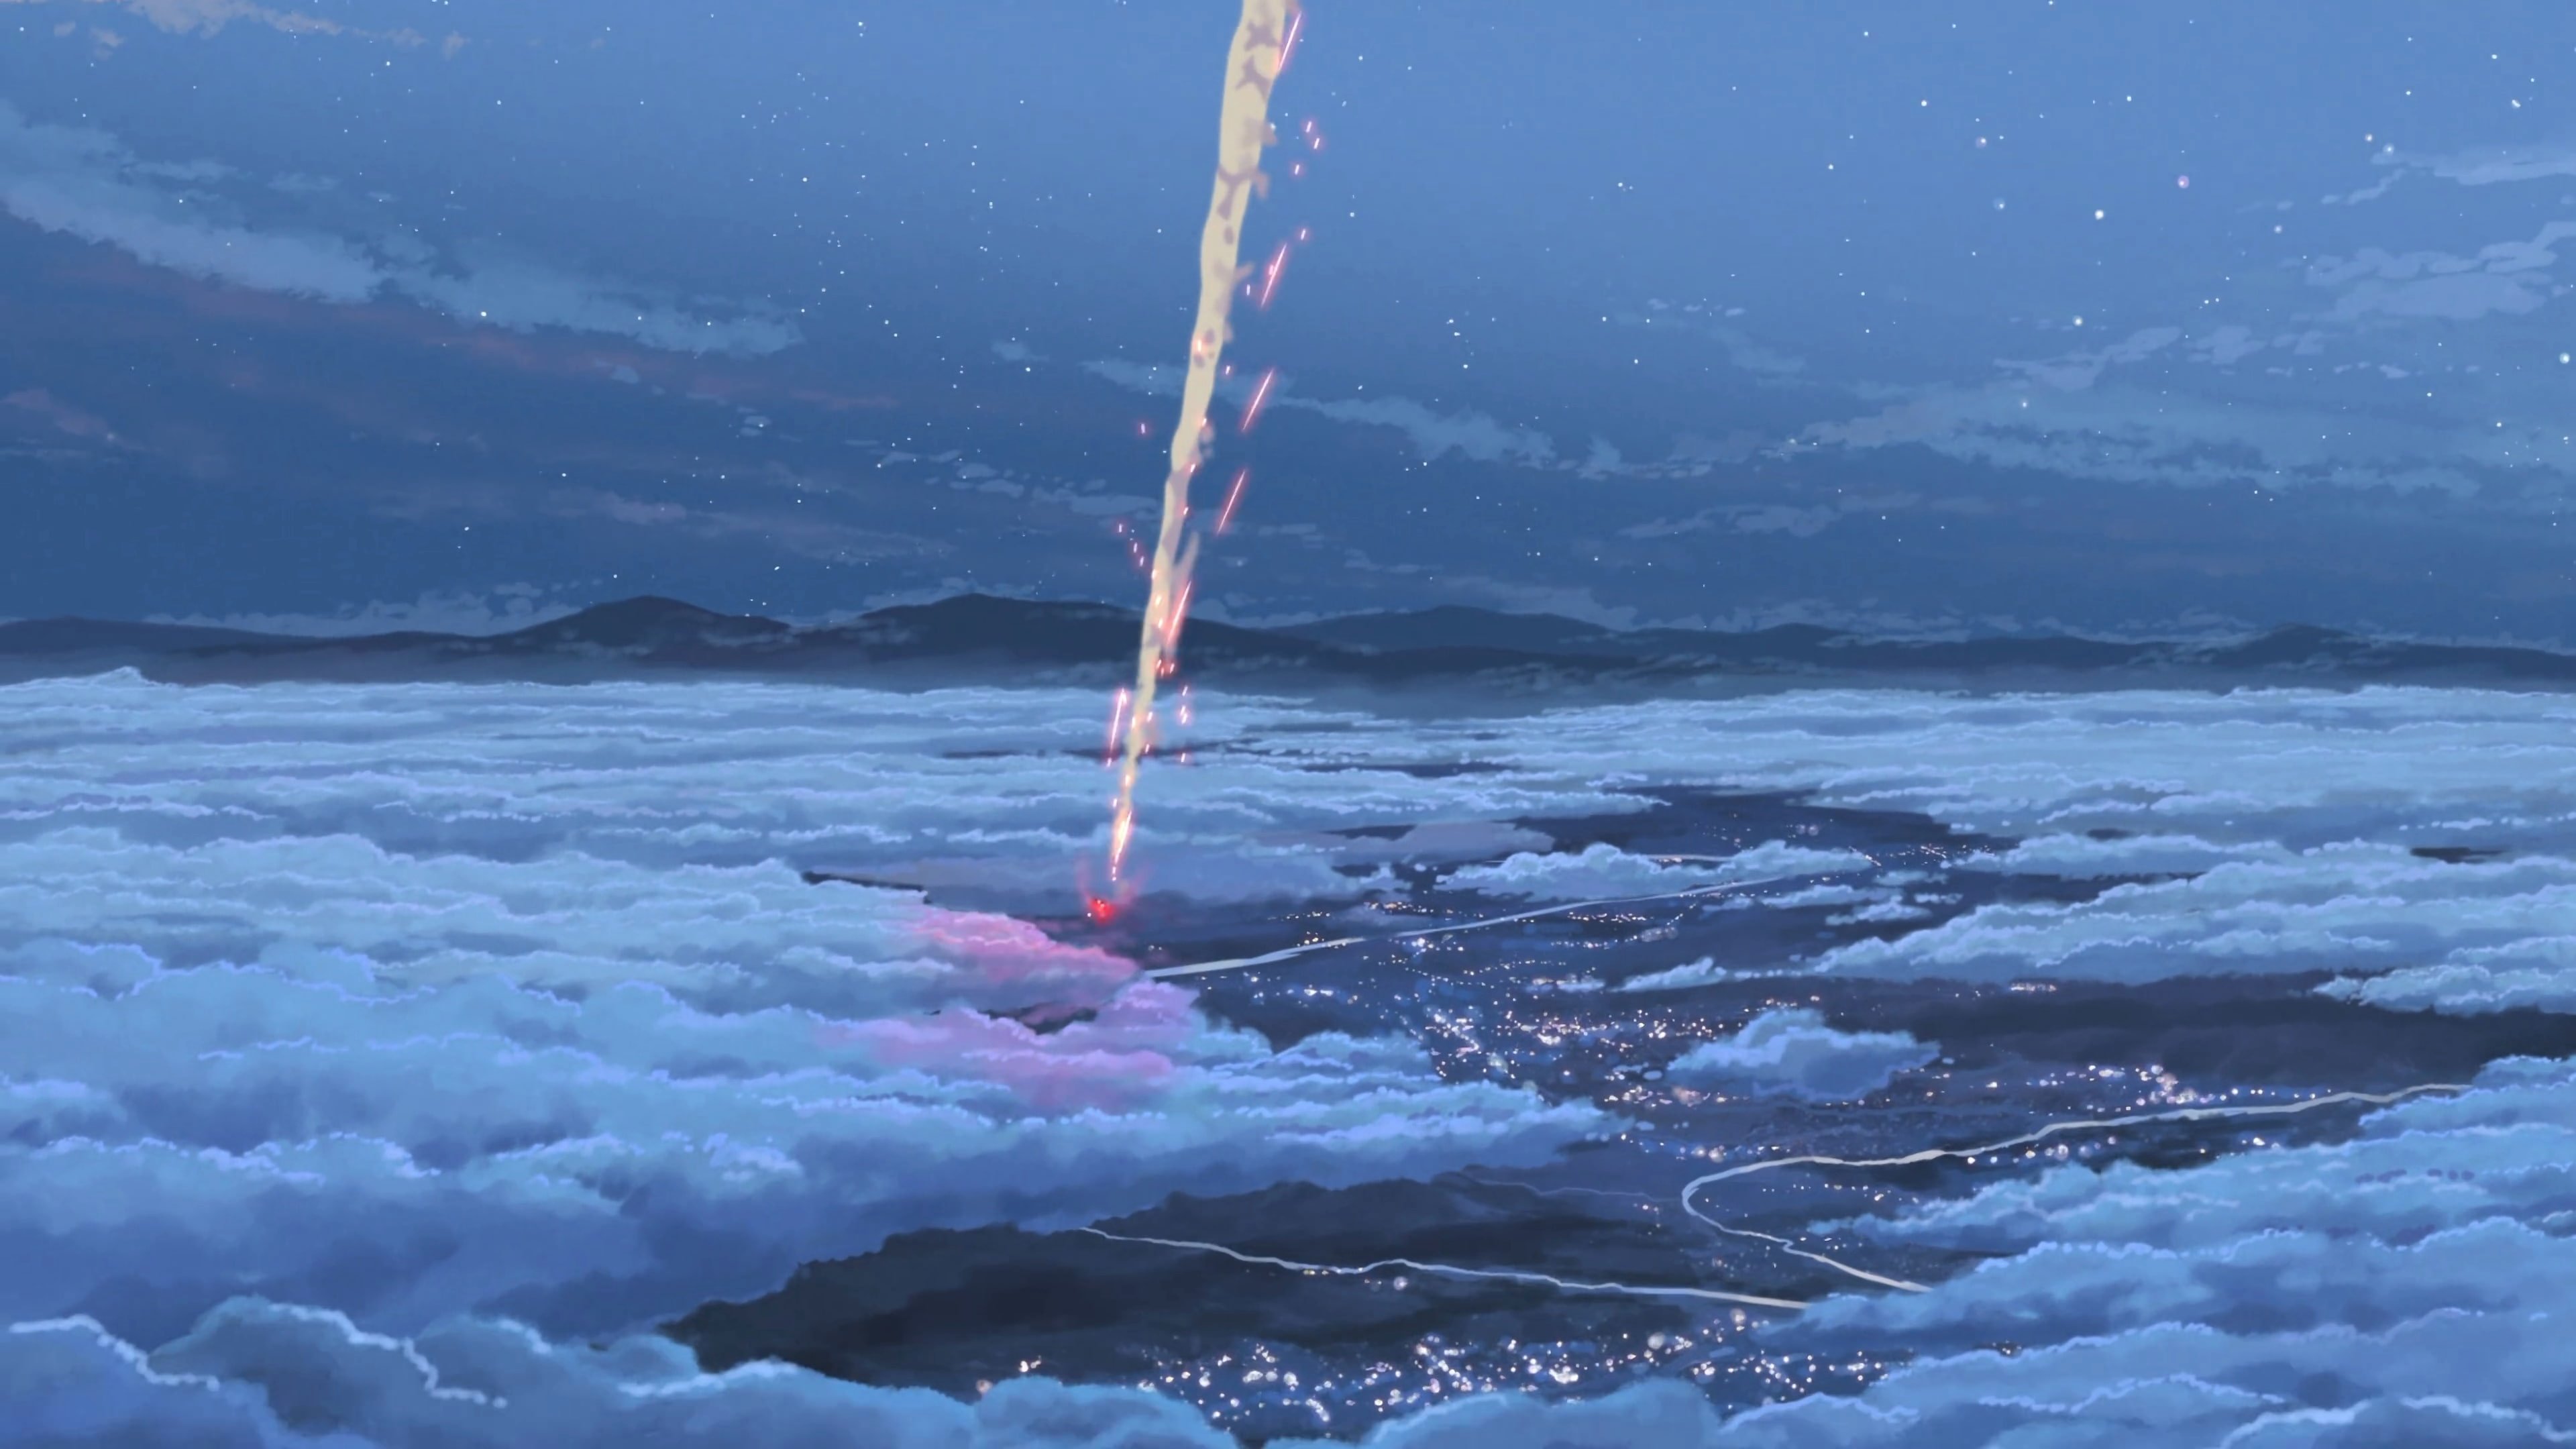 Makoto Shinkai Kimi No Na Wa Wallpaper Full HD Free Download